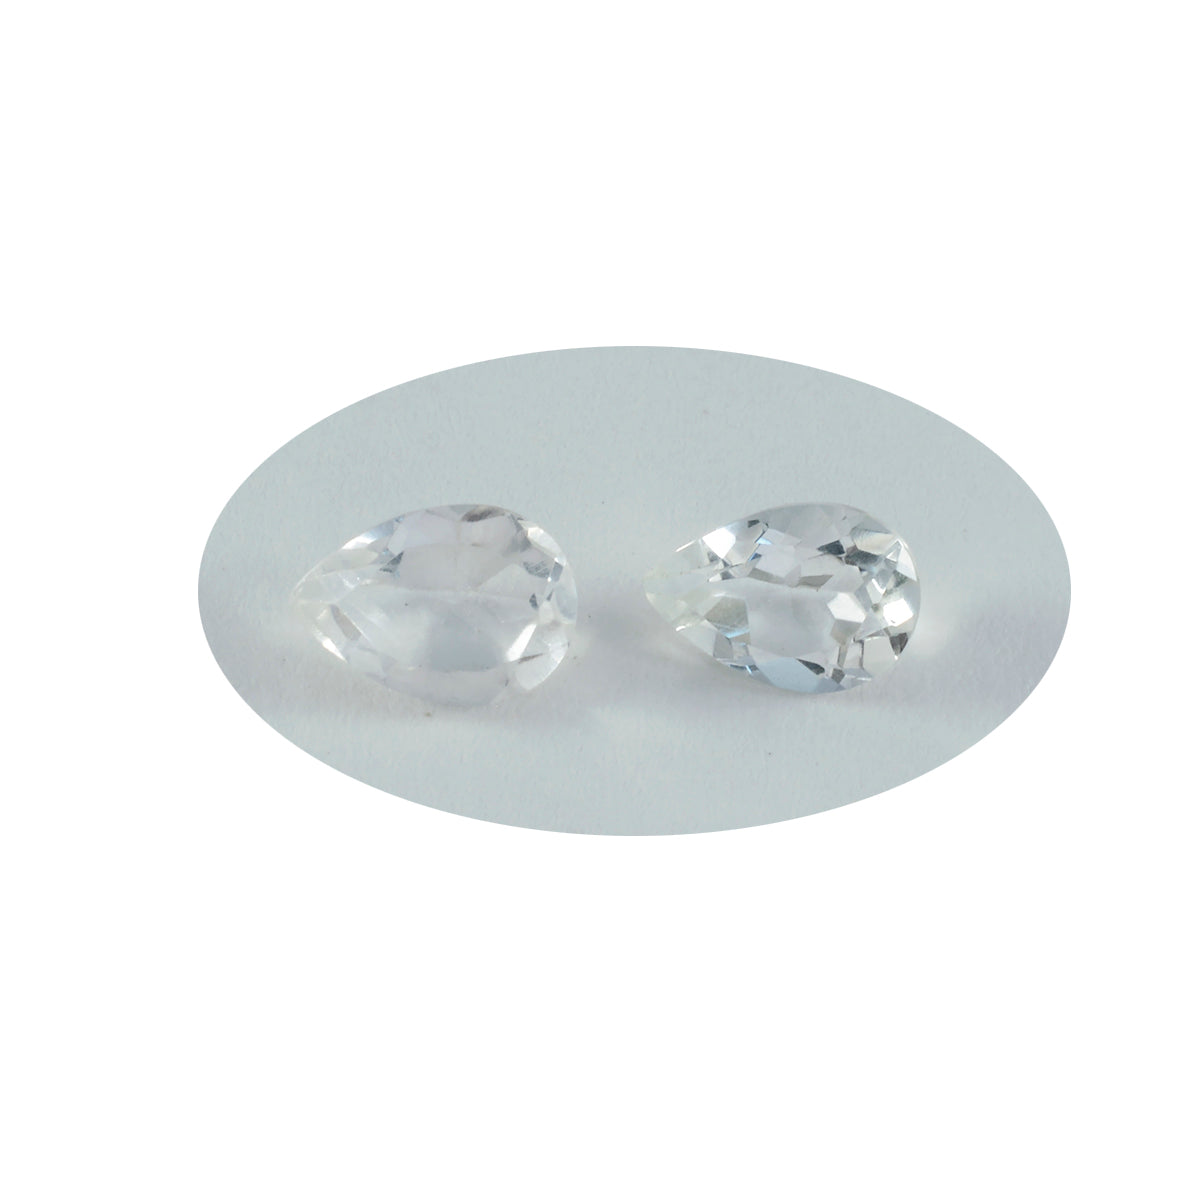 Riyogems 1 Stück weißer Kristallquarz, facettiert, 8 x 12 mm, Birnenform, wunderbare Qualität, lose Edelsteine